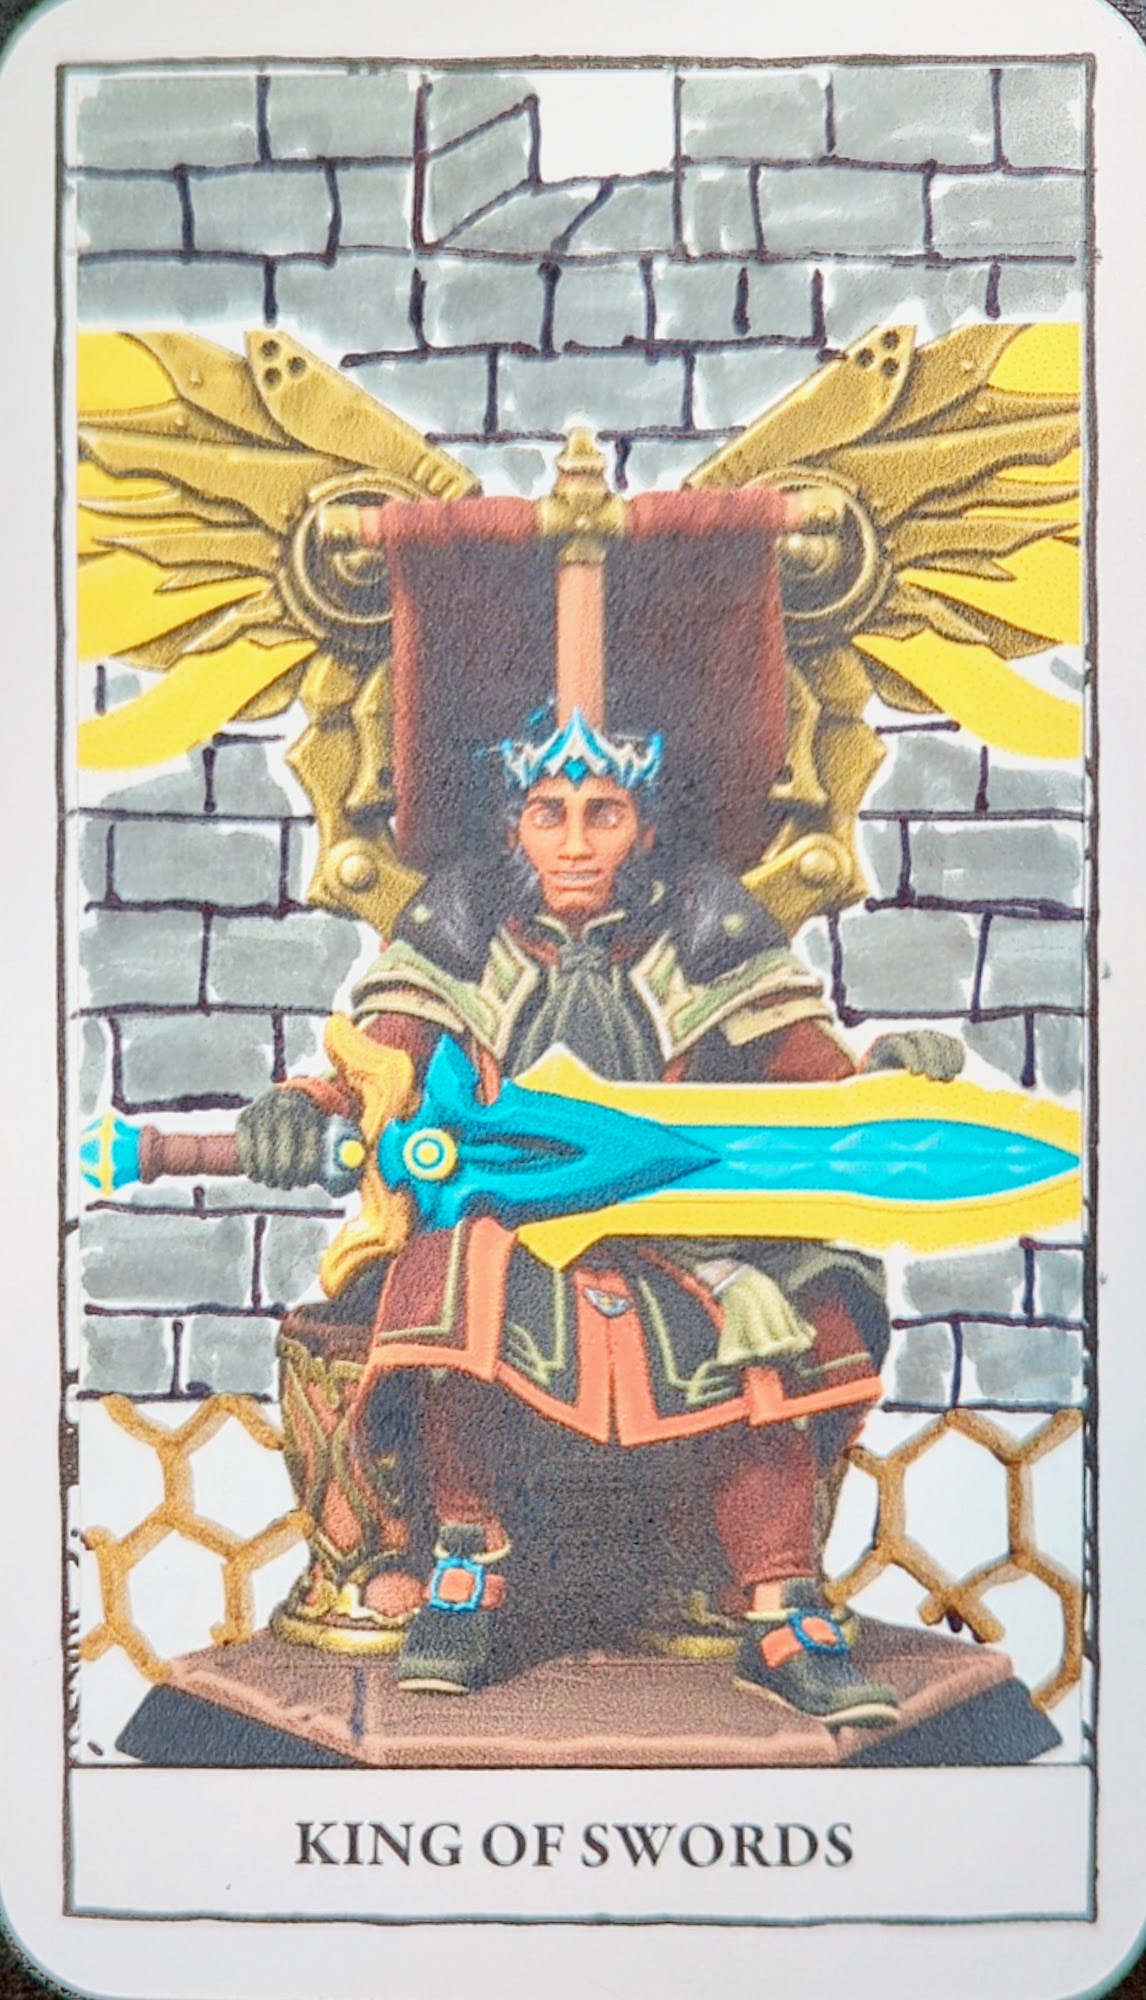 King of Swords, Avalon the Tridenser King